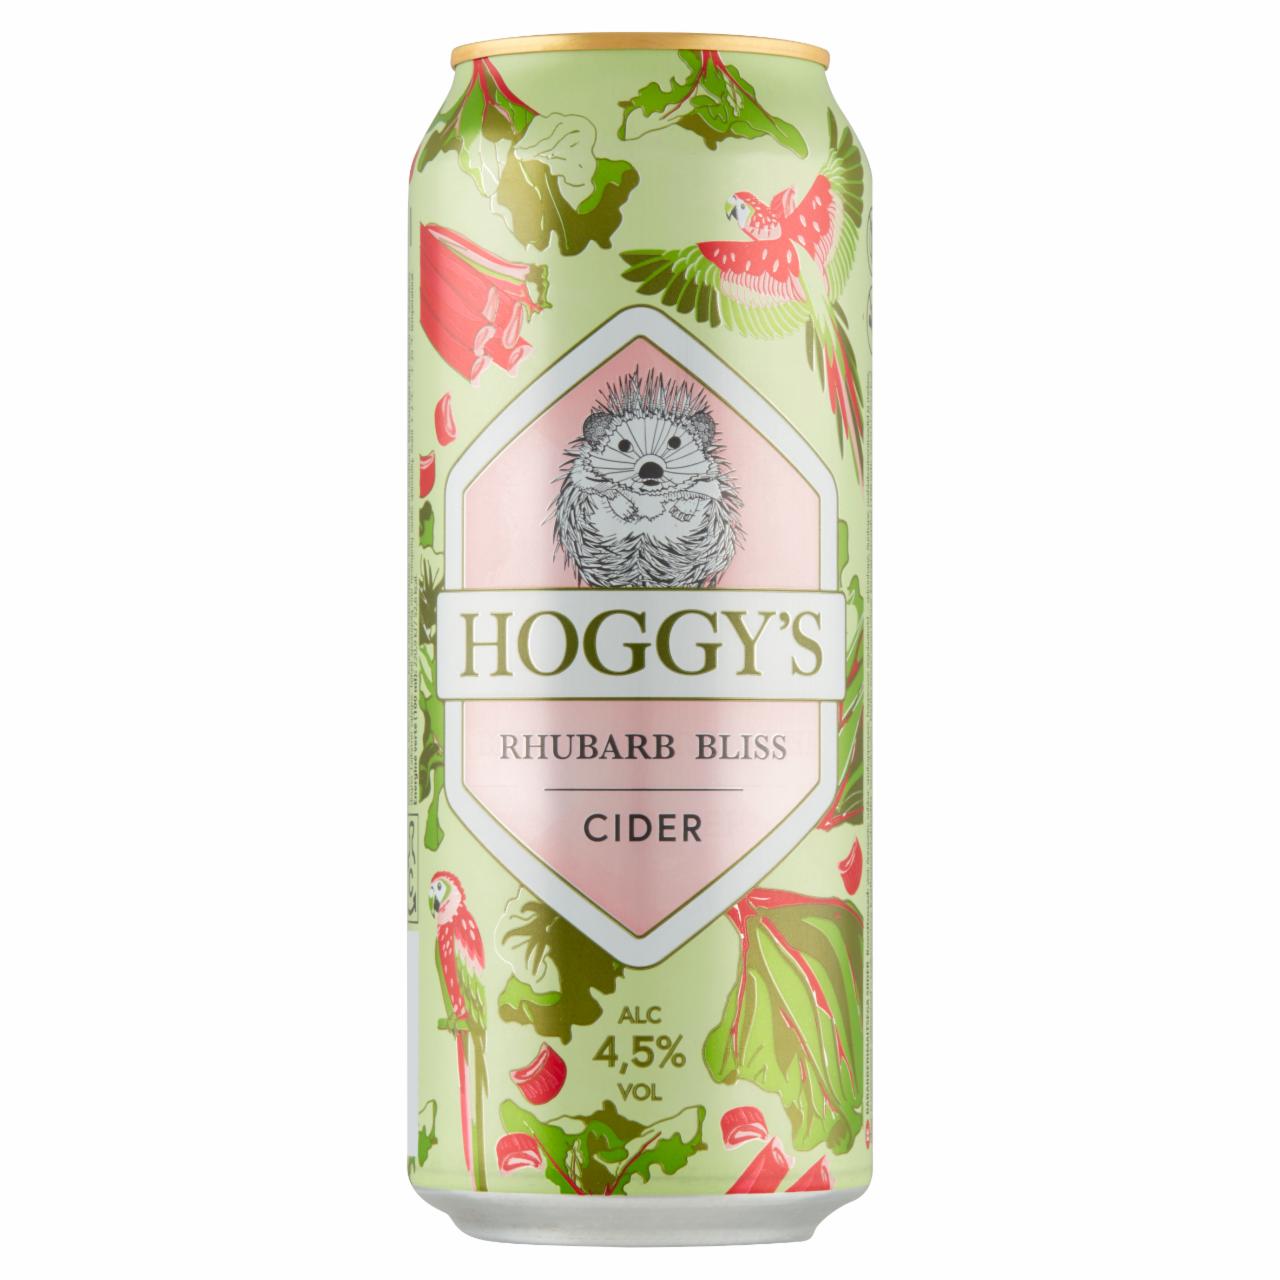 Képek - Hoggy's Rhubarb Bliss szénsavas rebarbara ízű cider 4,5% 0,5 l